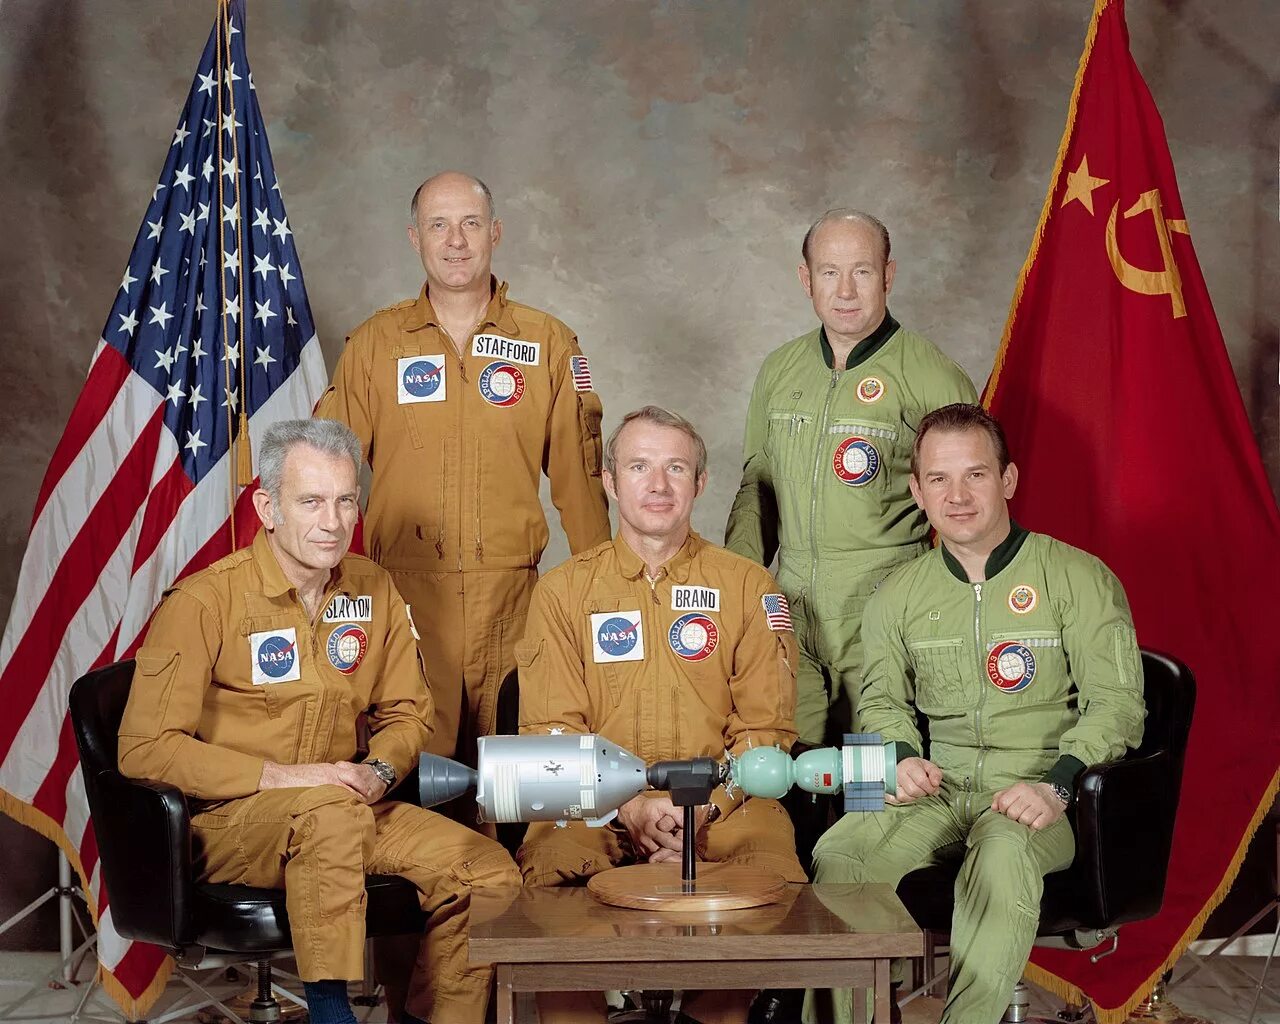 Союз двух стран. Союз Аполлон 1975. Союз Аполлон экипаж Союз-Аполлон 1975. Союз Аполлон 15 июля 1975. Союз 19 и Аполлон.